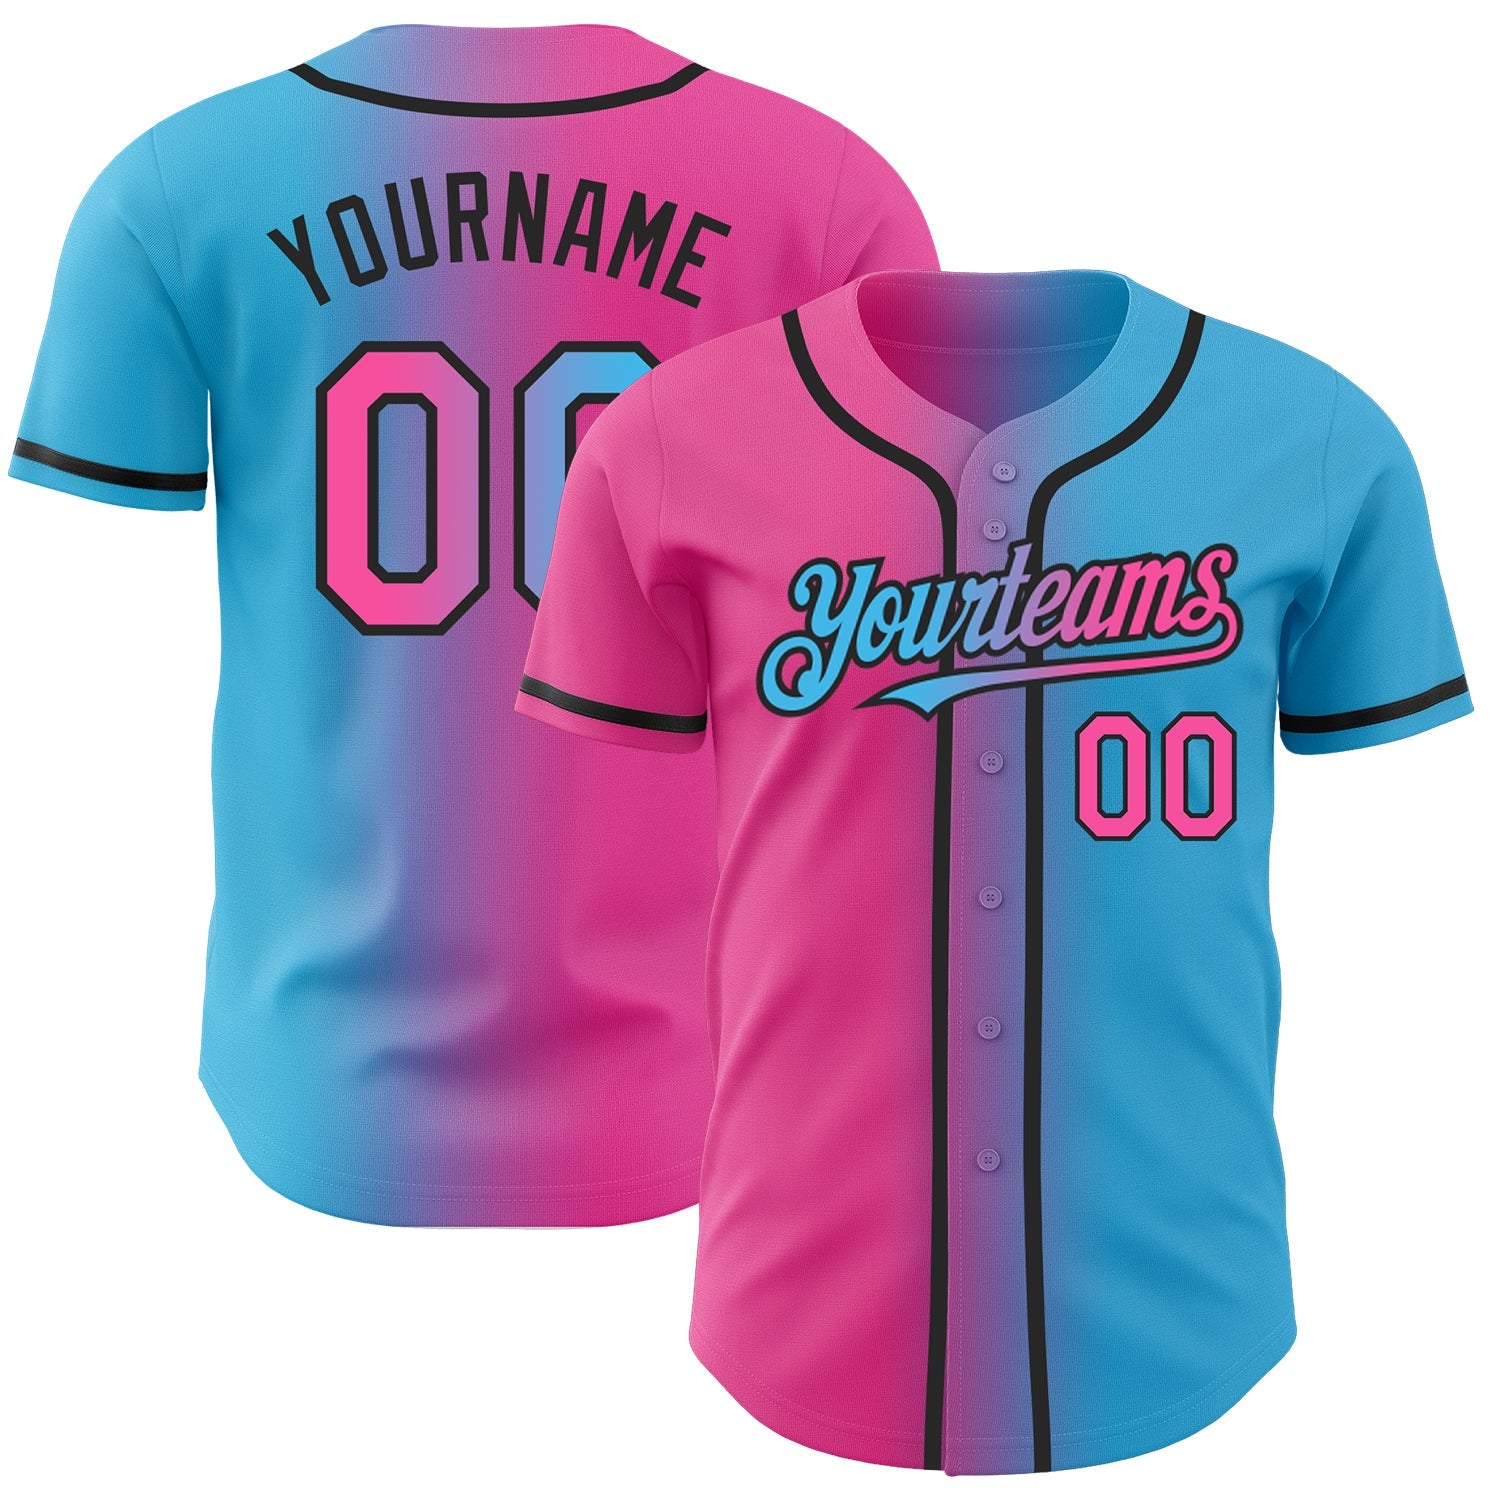 Benutzerdefiniertes himmelblaues, rosa-schwarzes, authentisches modisches Baseball-Trikot mit Farbverlauf